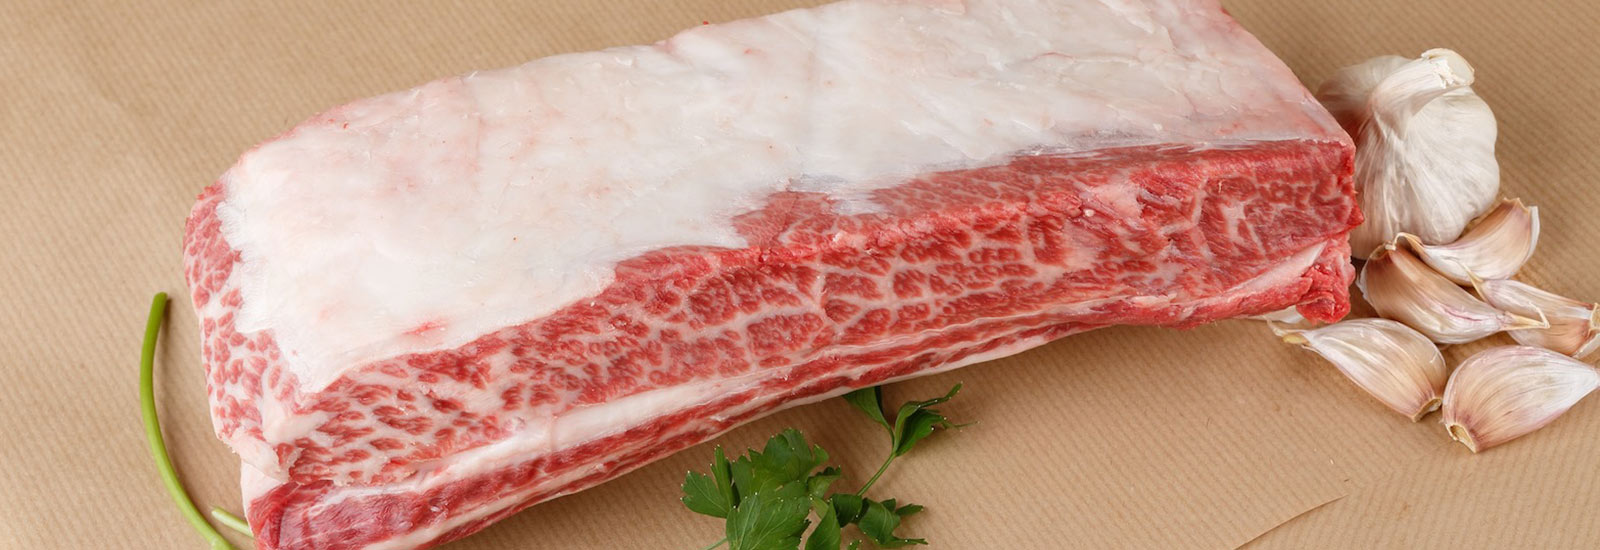 Cómo conservar la carne en la nevera y guardarla adecuadamente